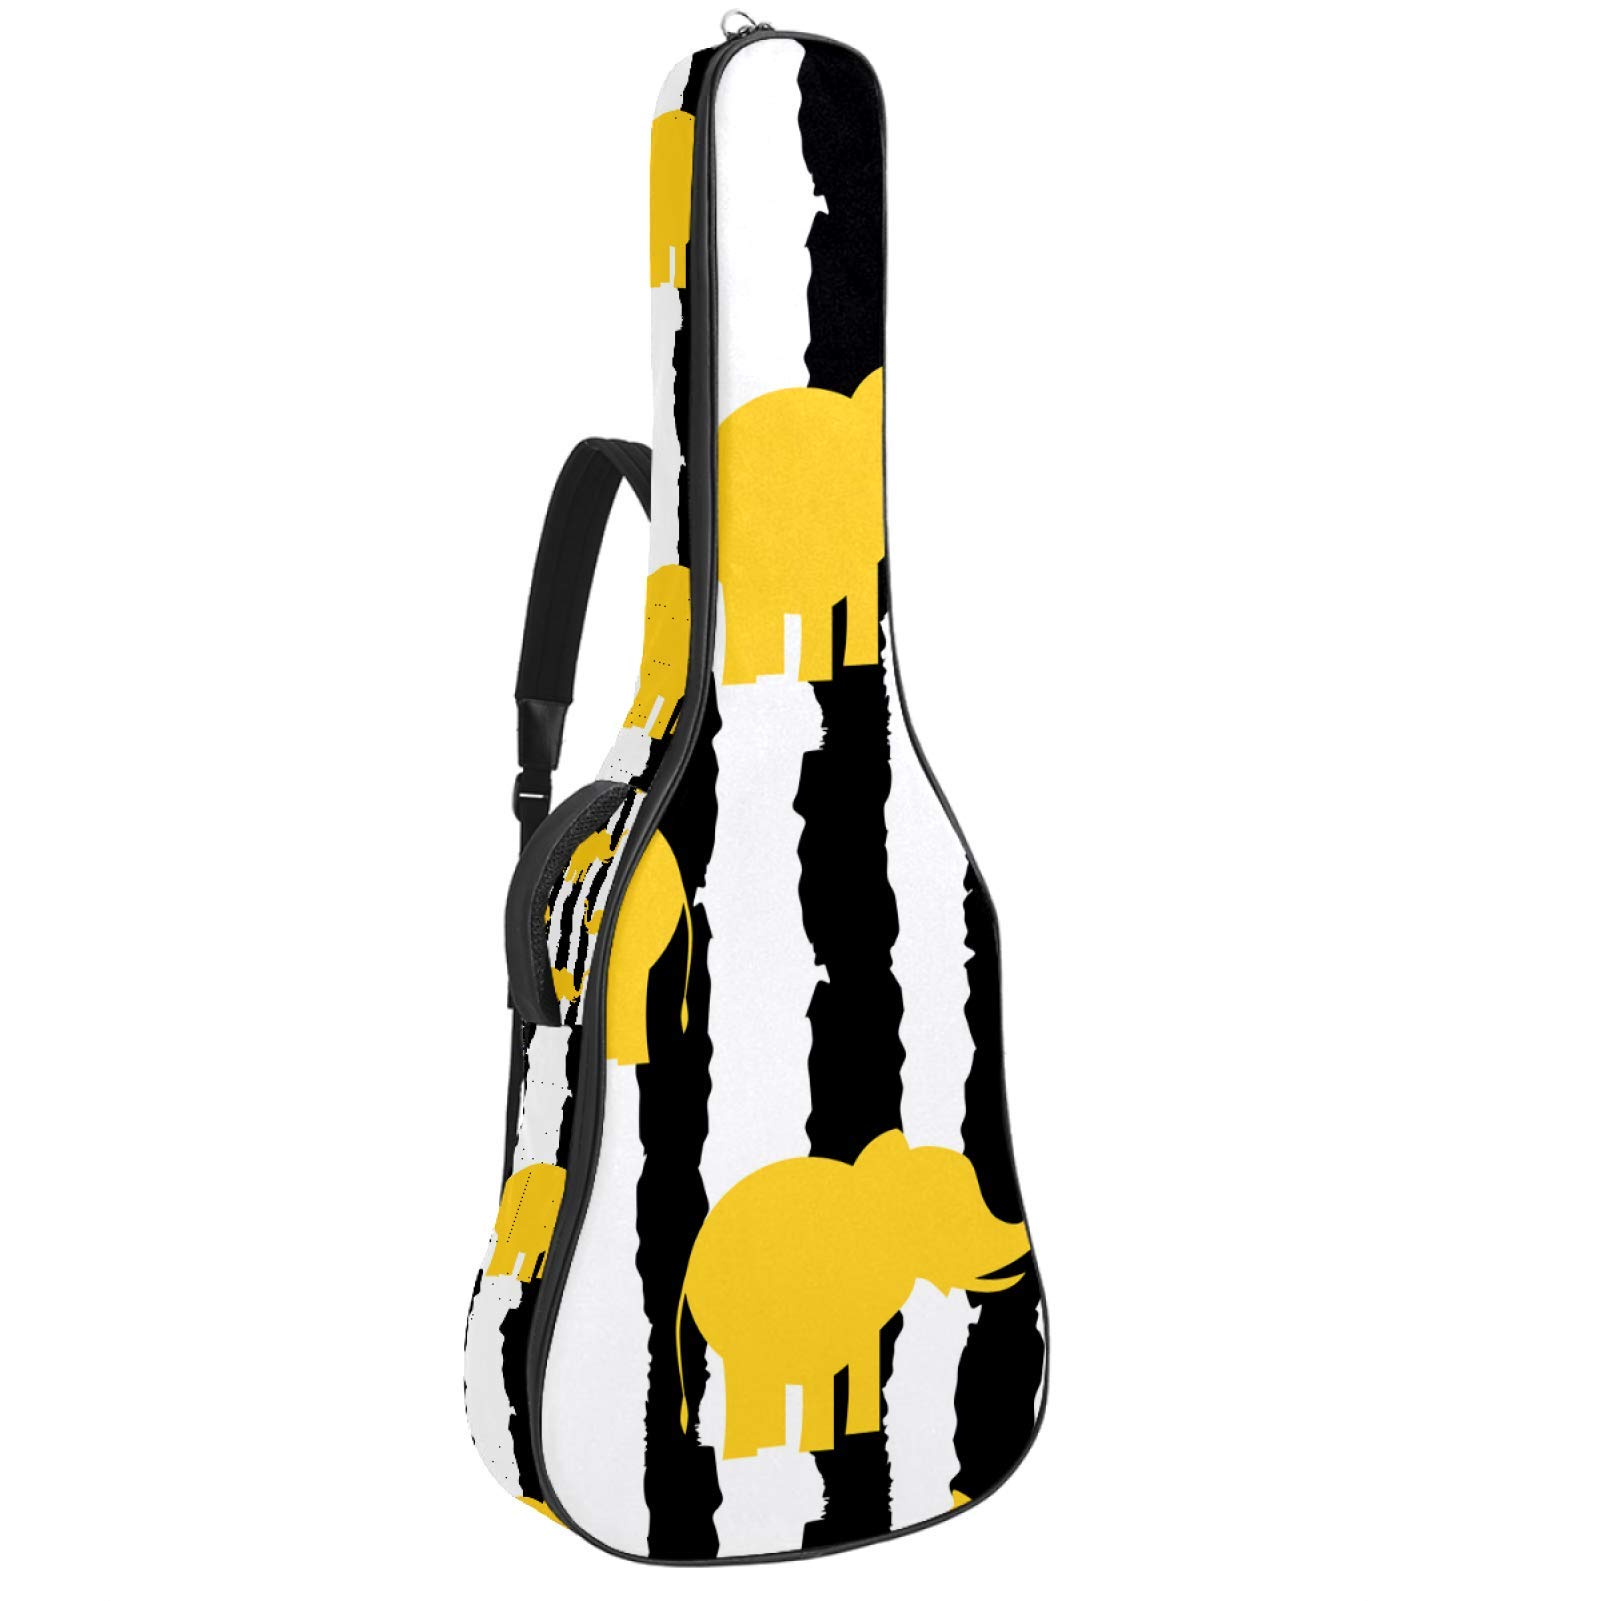 Gitarrentasche mit Reißverschluss, wasserdicht, weich, für Bassgitarre, Akustik- und klassische Folk-Gitarre, gelbe Elefanten, schwarze weiße Streifen